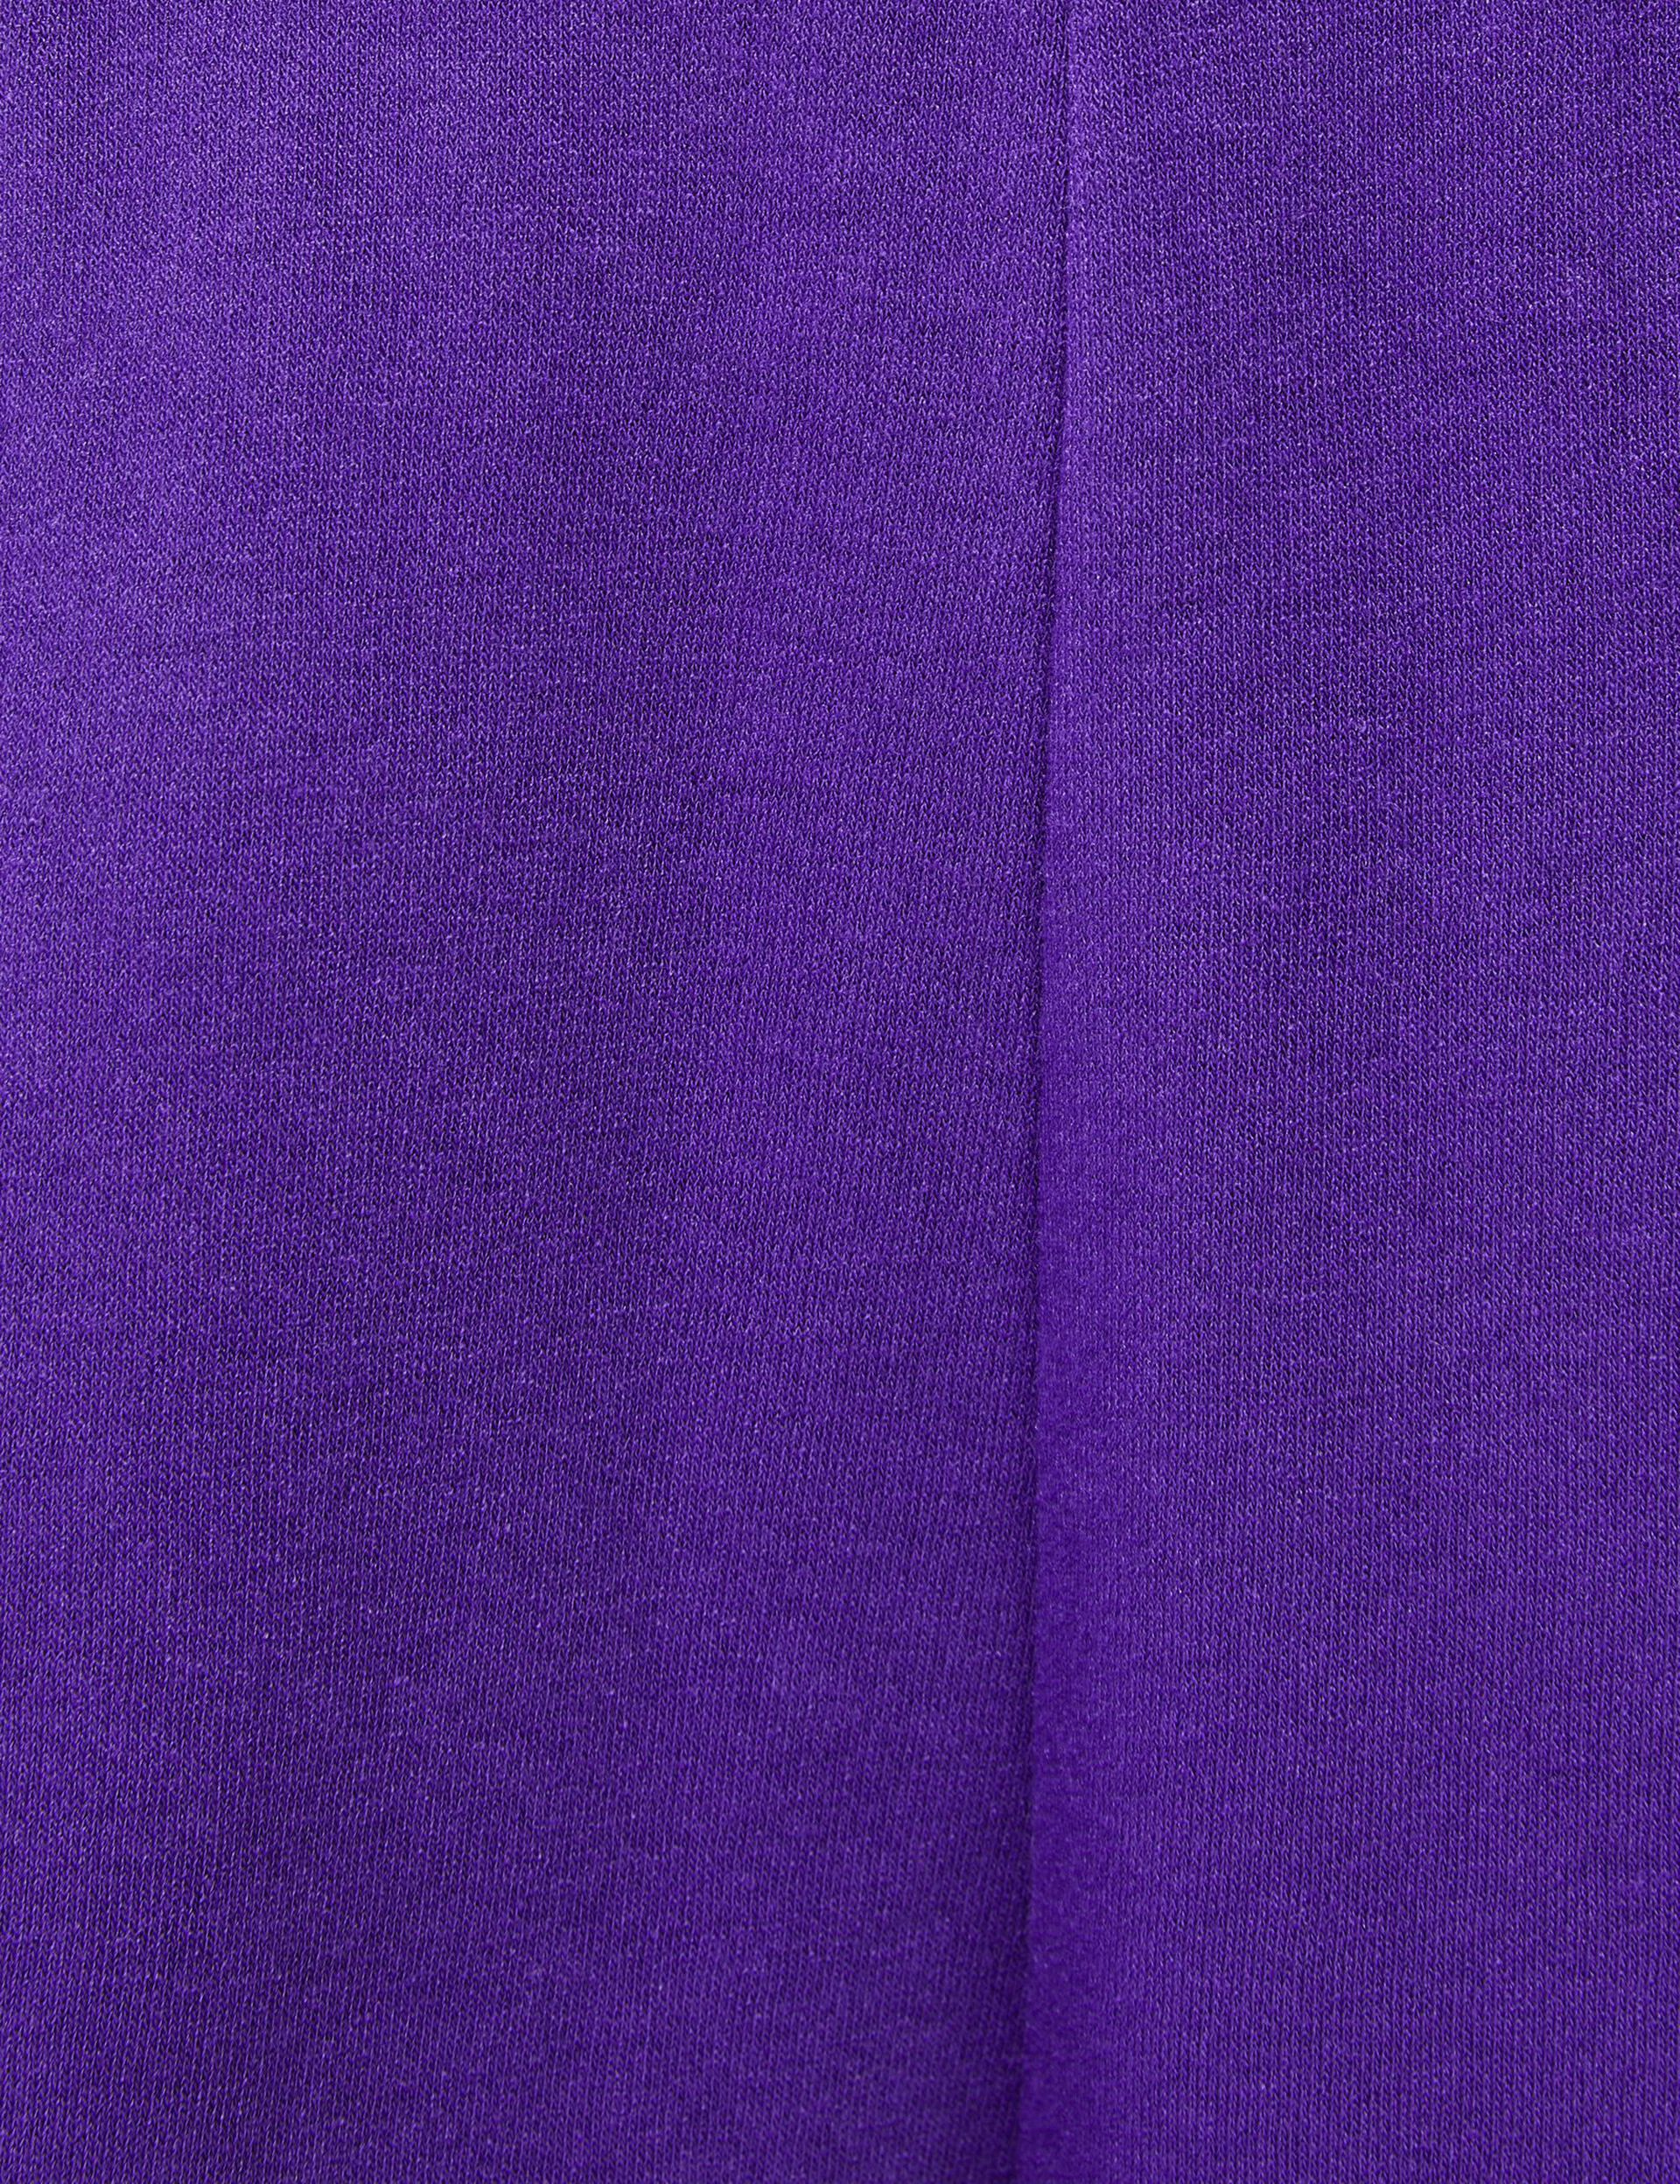 Jogging coutures apparentes violet foncé